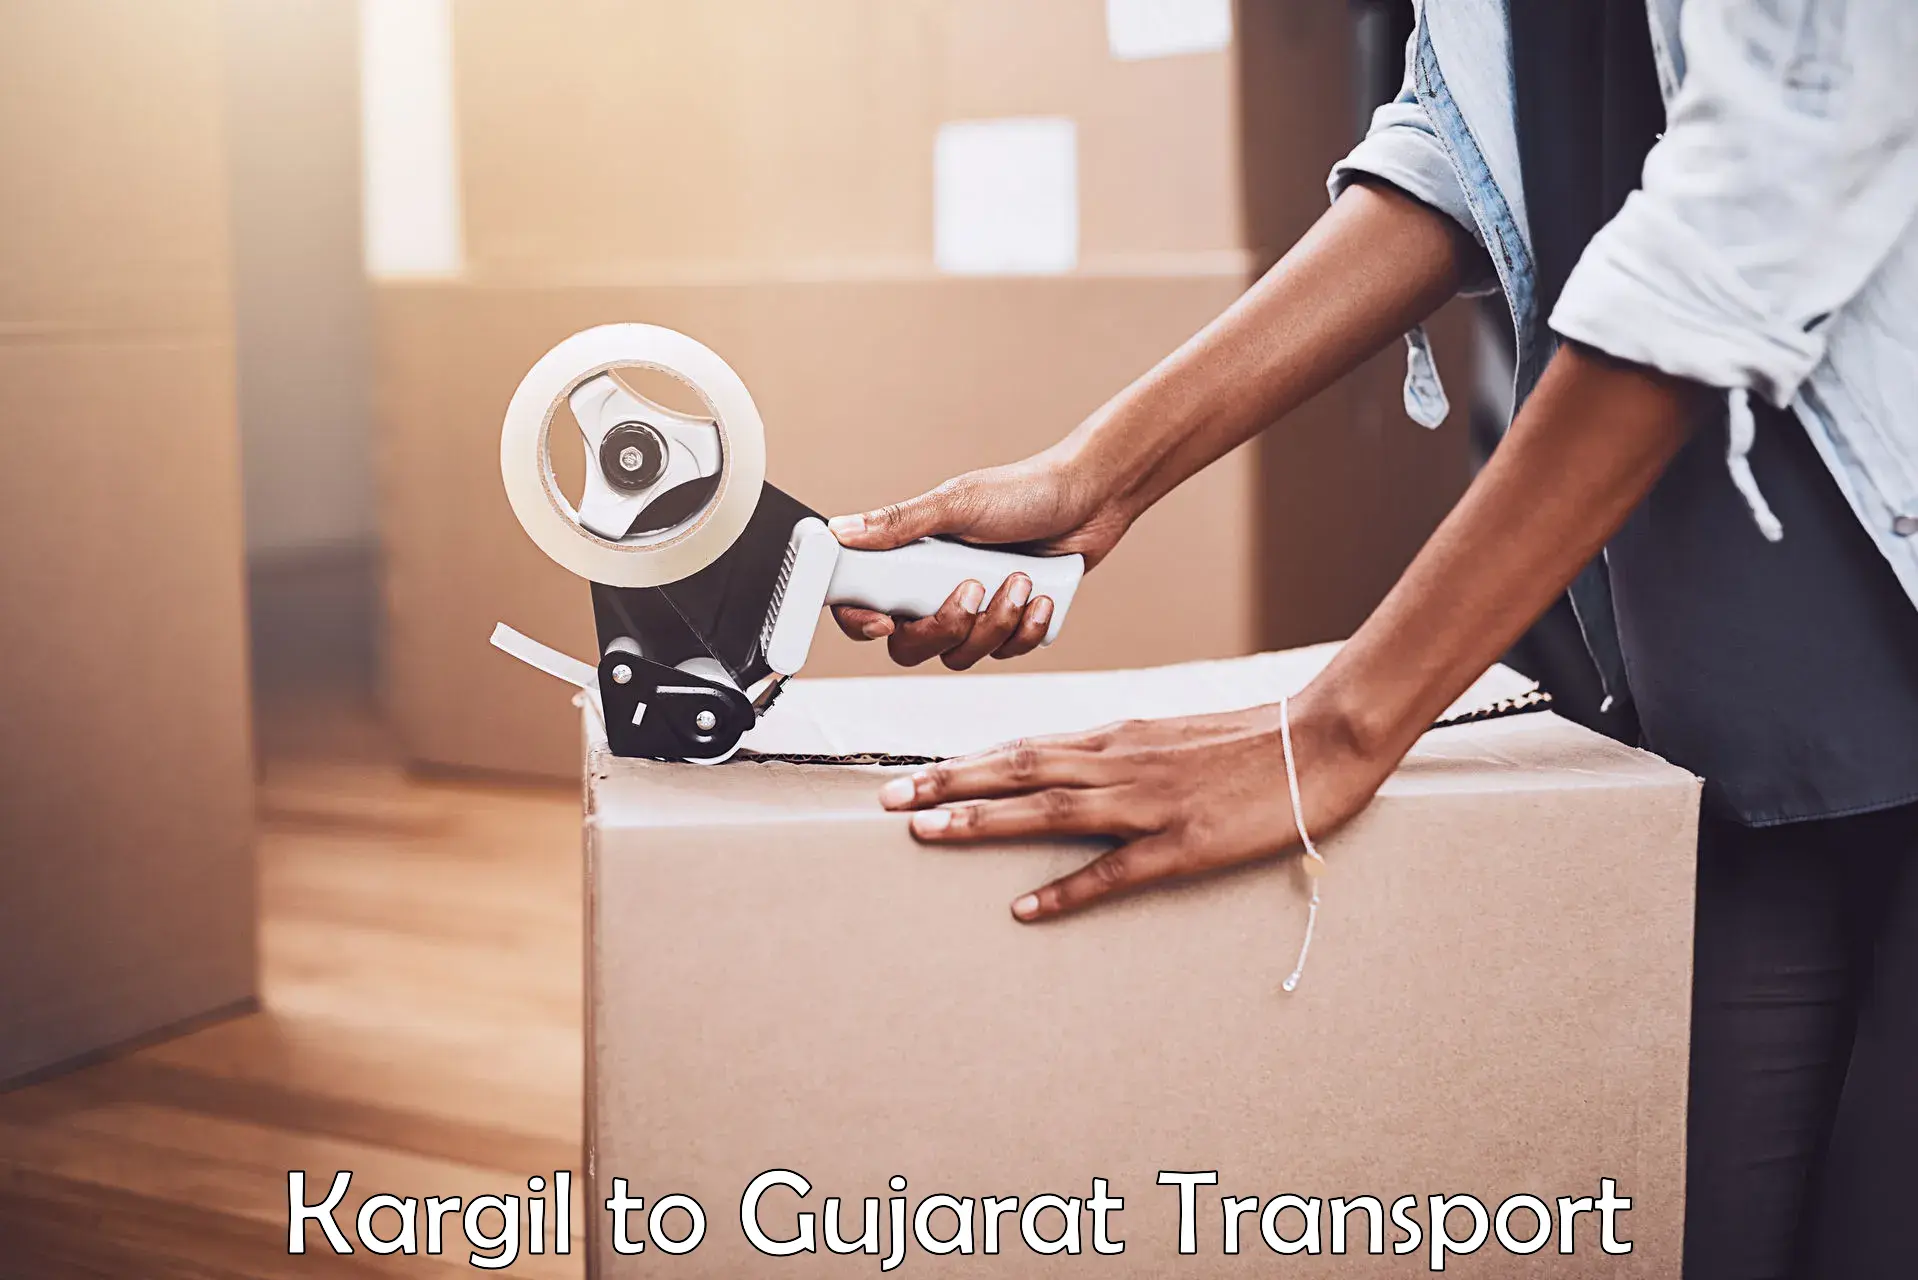 Transport shared services Kargil to Veraval